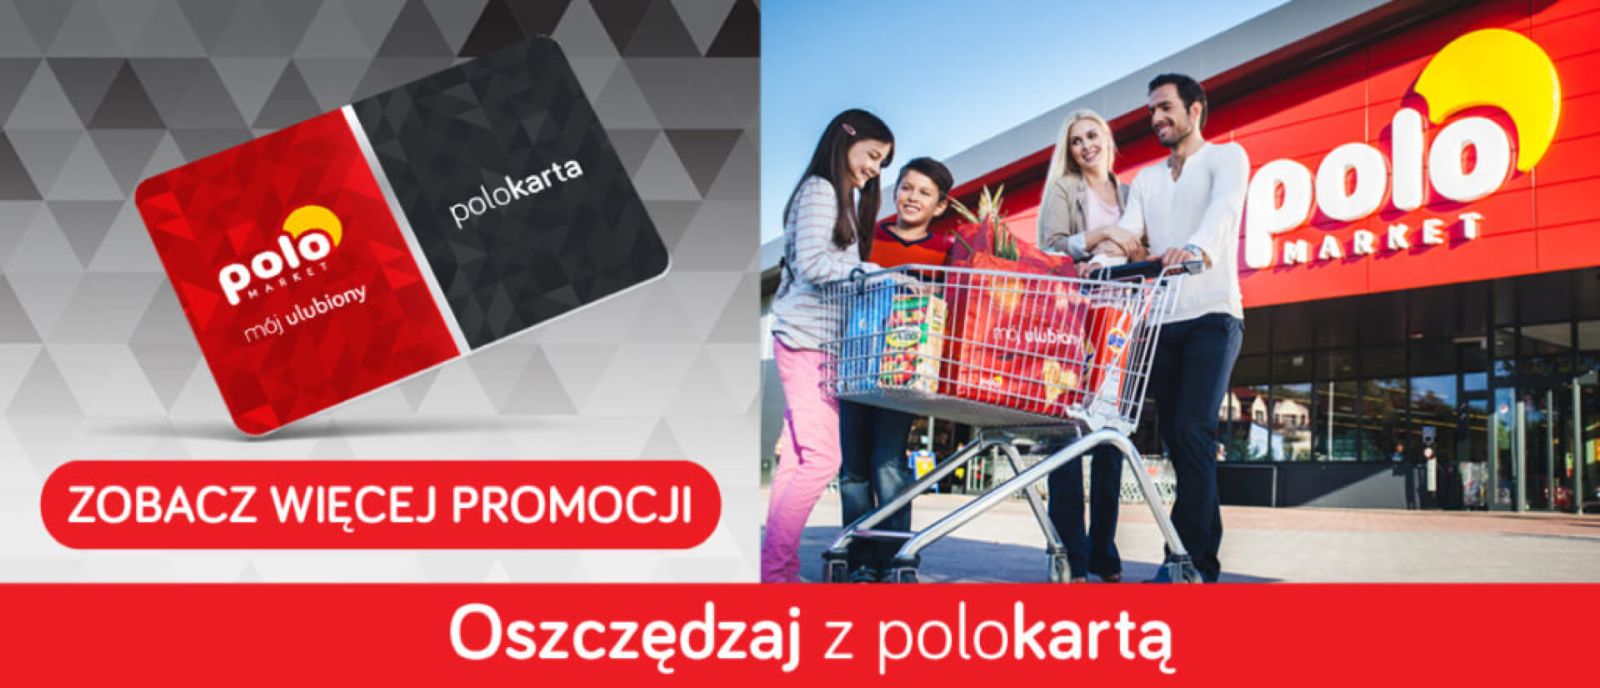 Aplikacja Polomarket i POLOkarta: rejestracja, zalety i promocje – czy warto założyć?